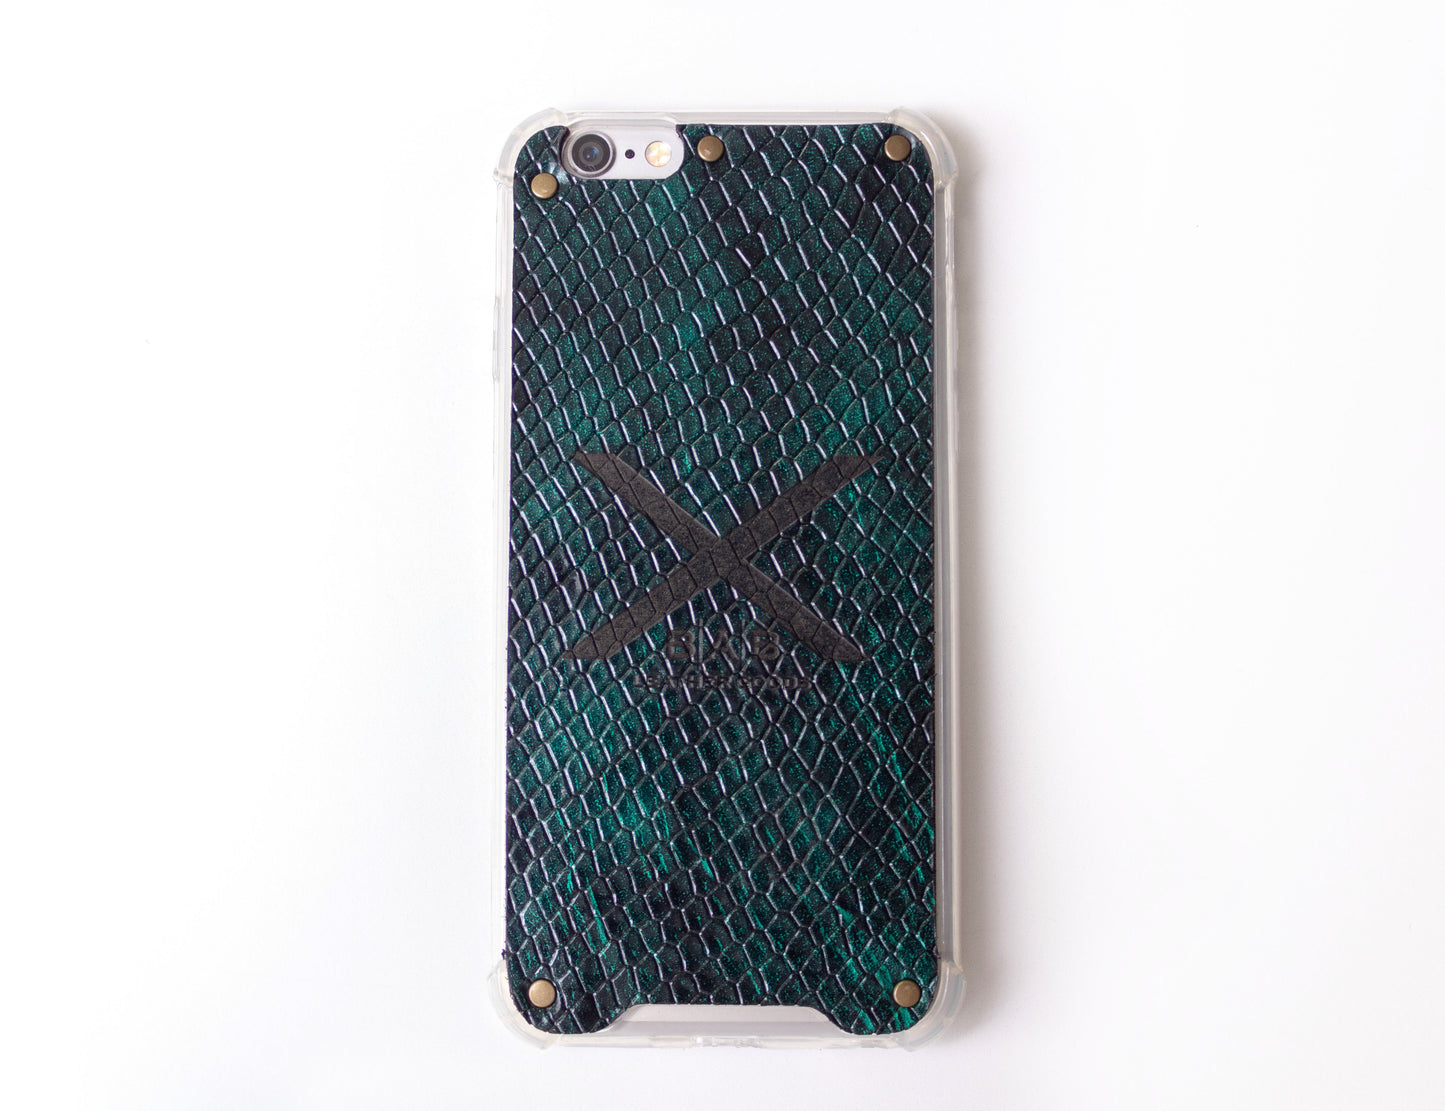 Funda para iPhone de Cuero Genuino Charol Python Verde Texturizado cortado y grabado con láser, 5 Remaches de Bronce.- F36